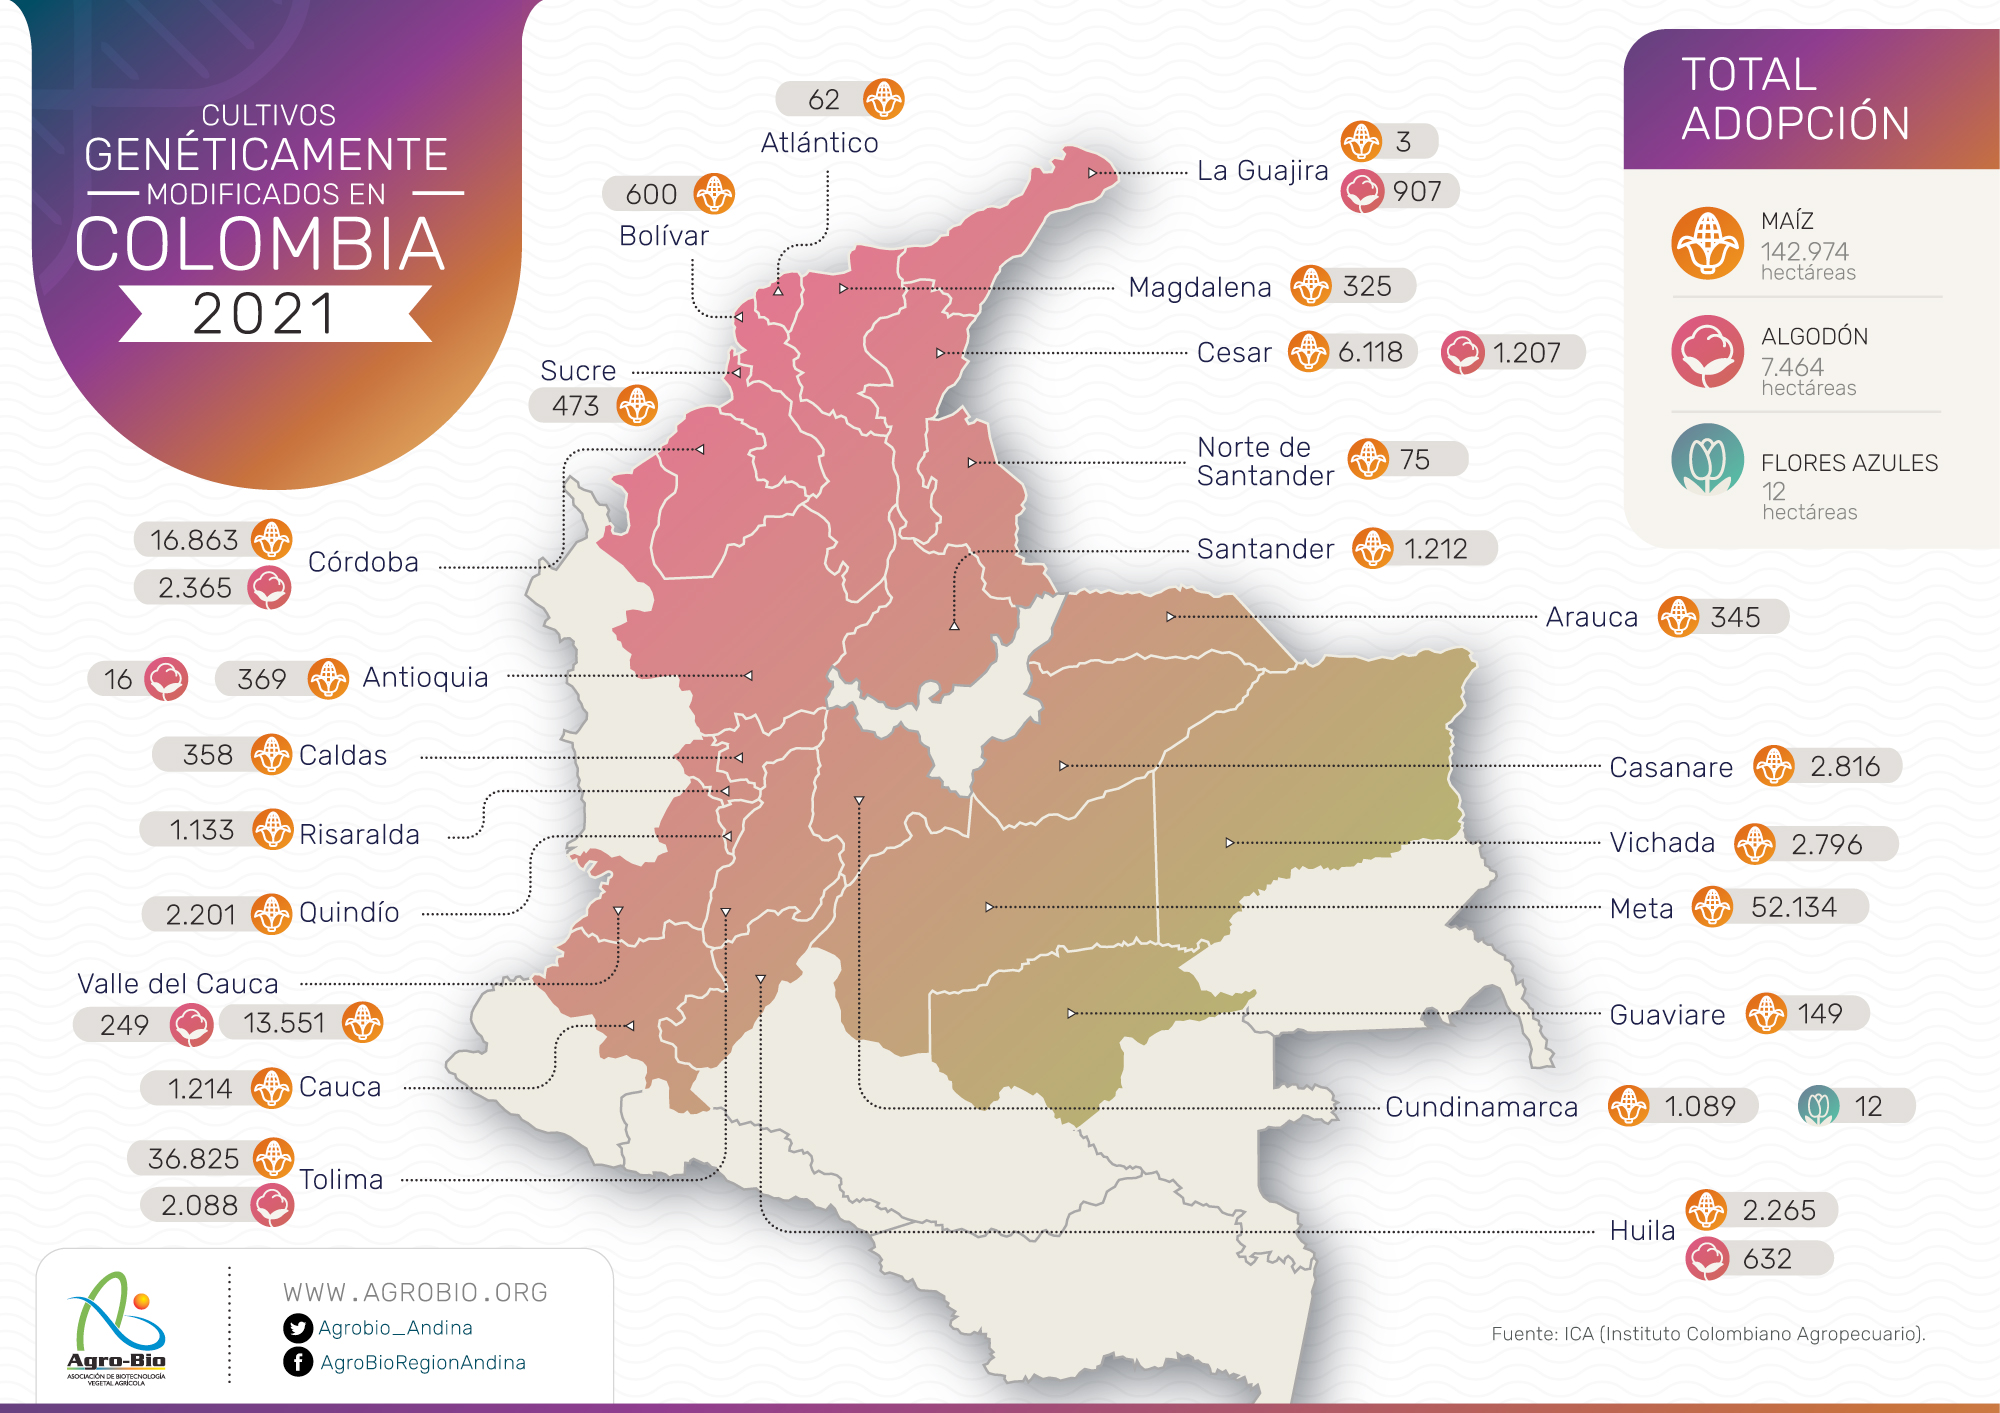 Mapa de adopción de cultivos transgénicos en Colombia (2021)